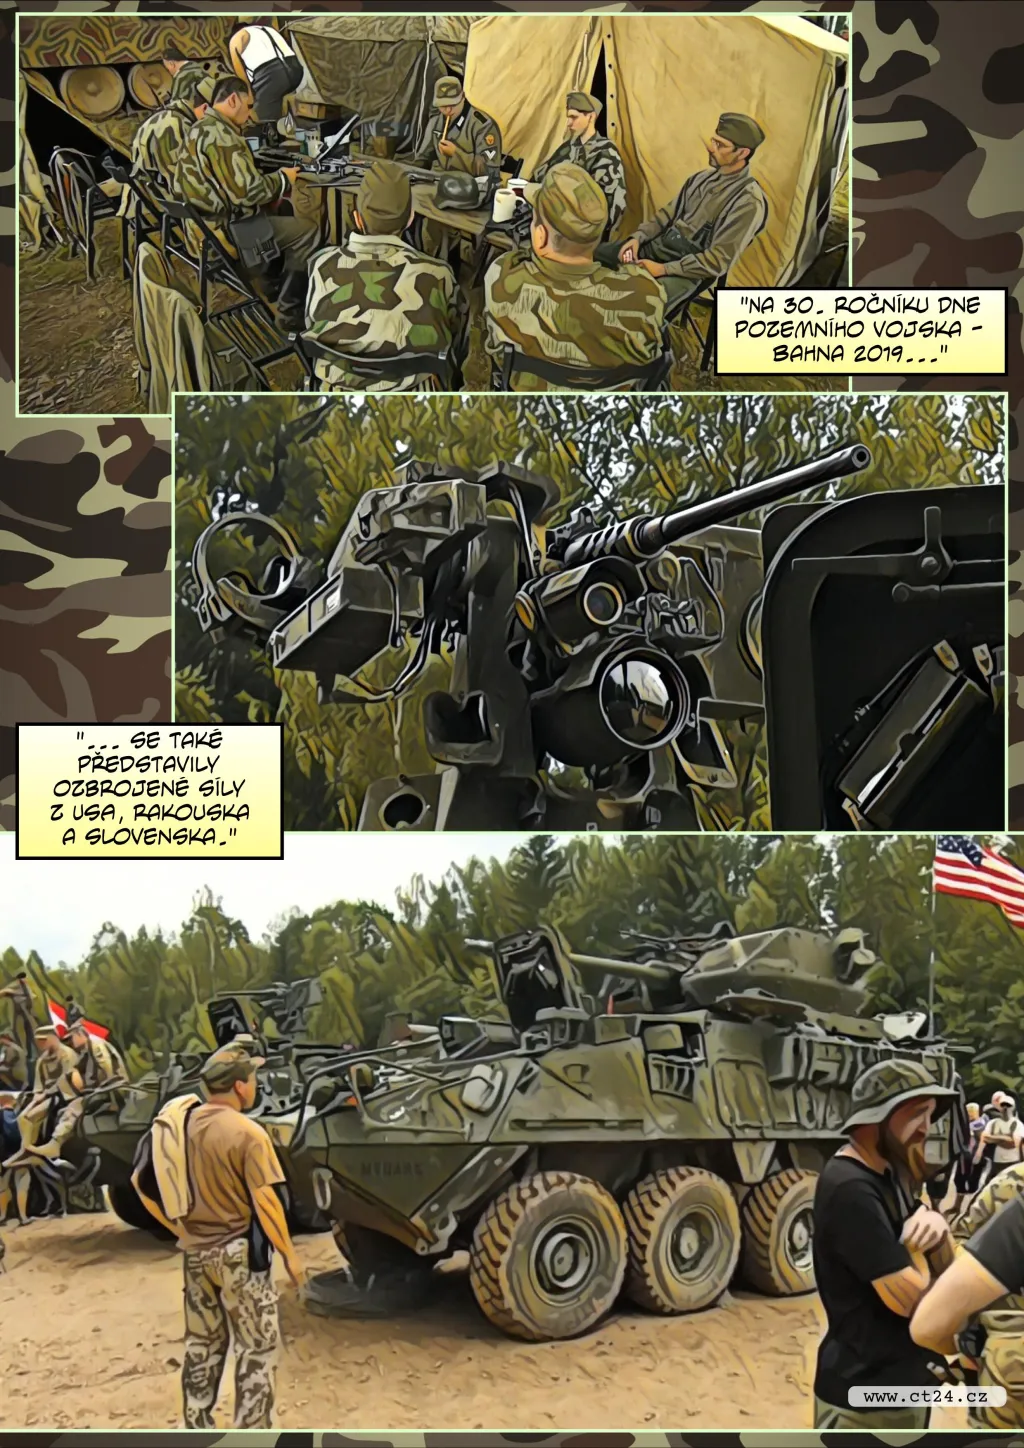 Komiks: Den pozemního vojska